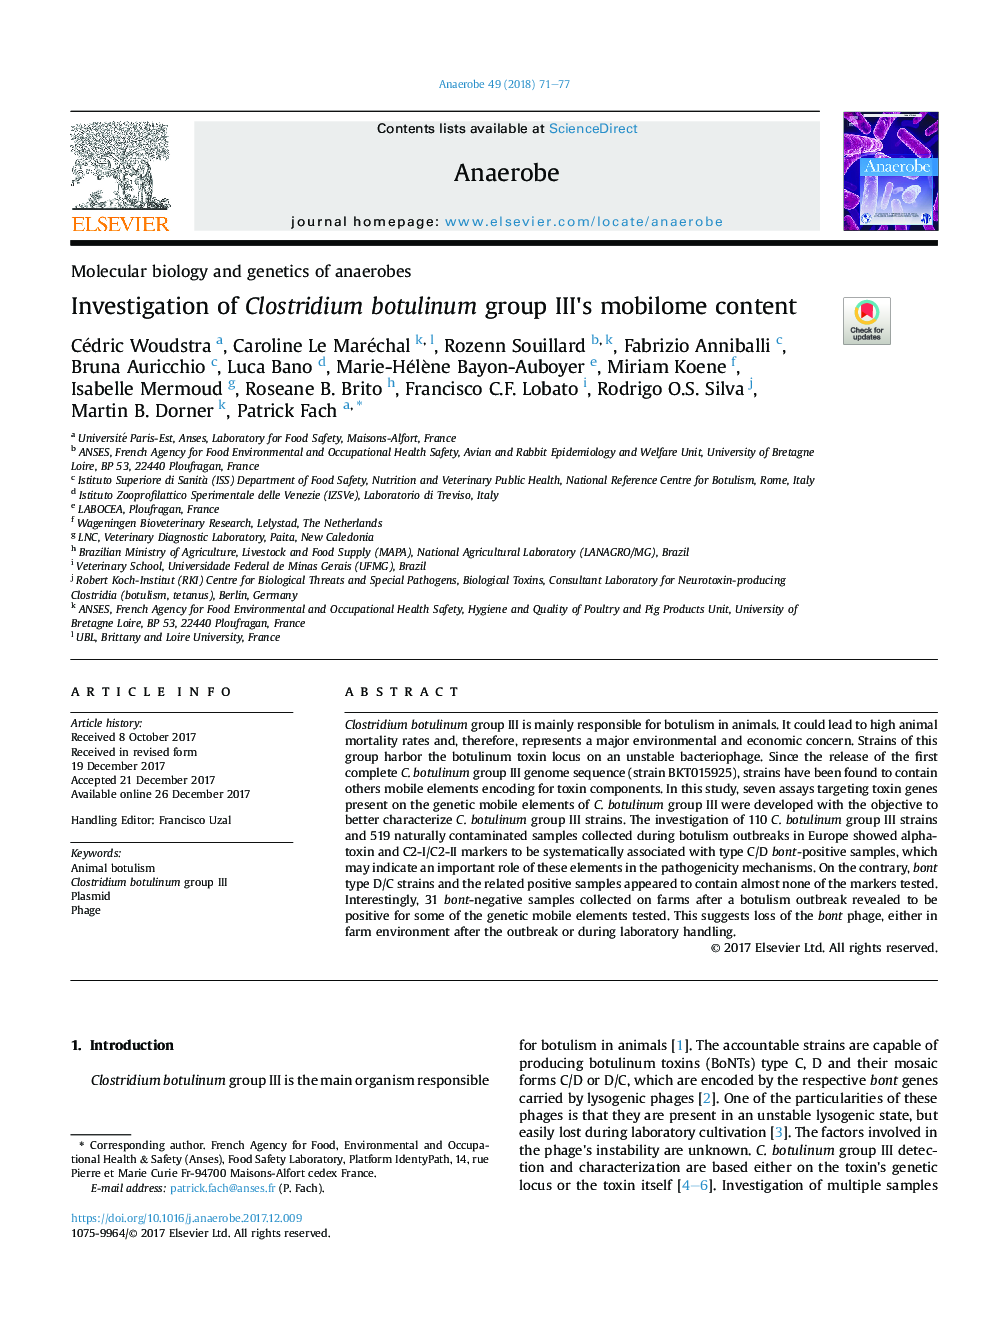 Investigation of Clostridium botulinum group III's mobilome content